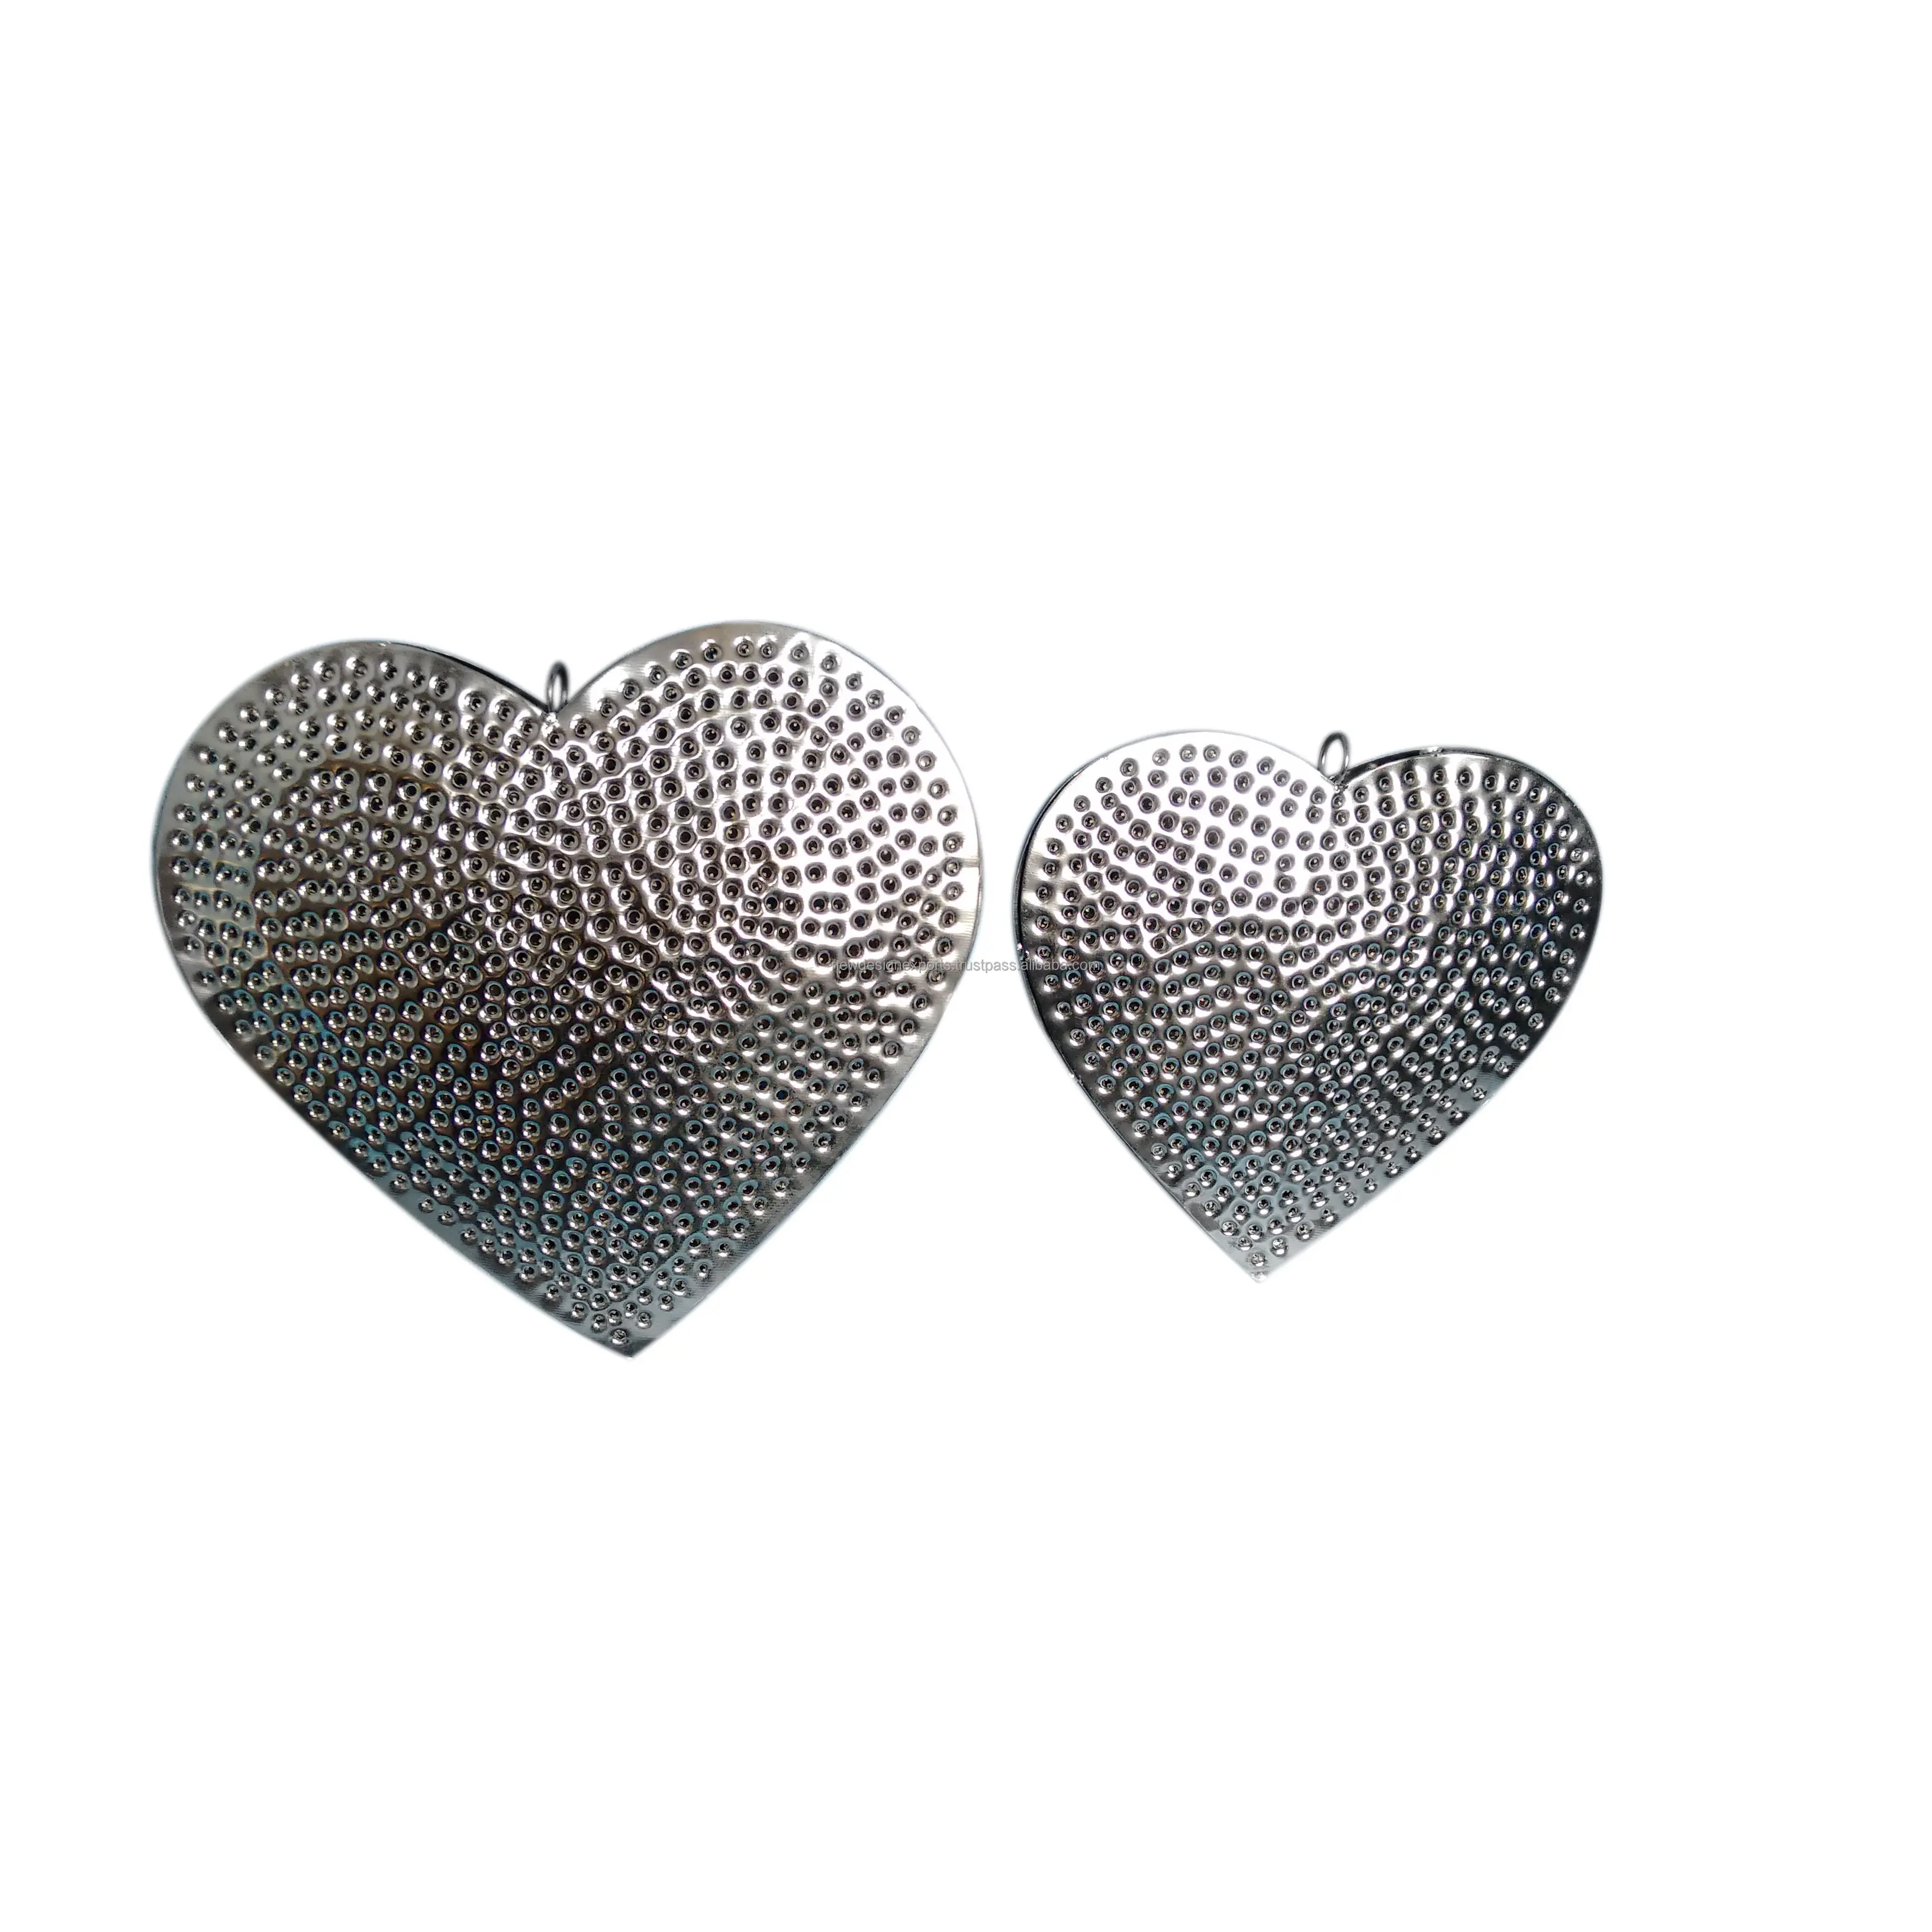 Kalp şekli noel asılı süsleme, tip: dekorasyon malzemeleri